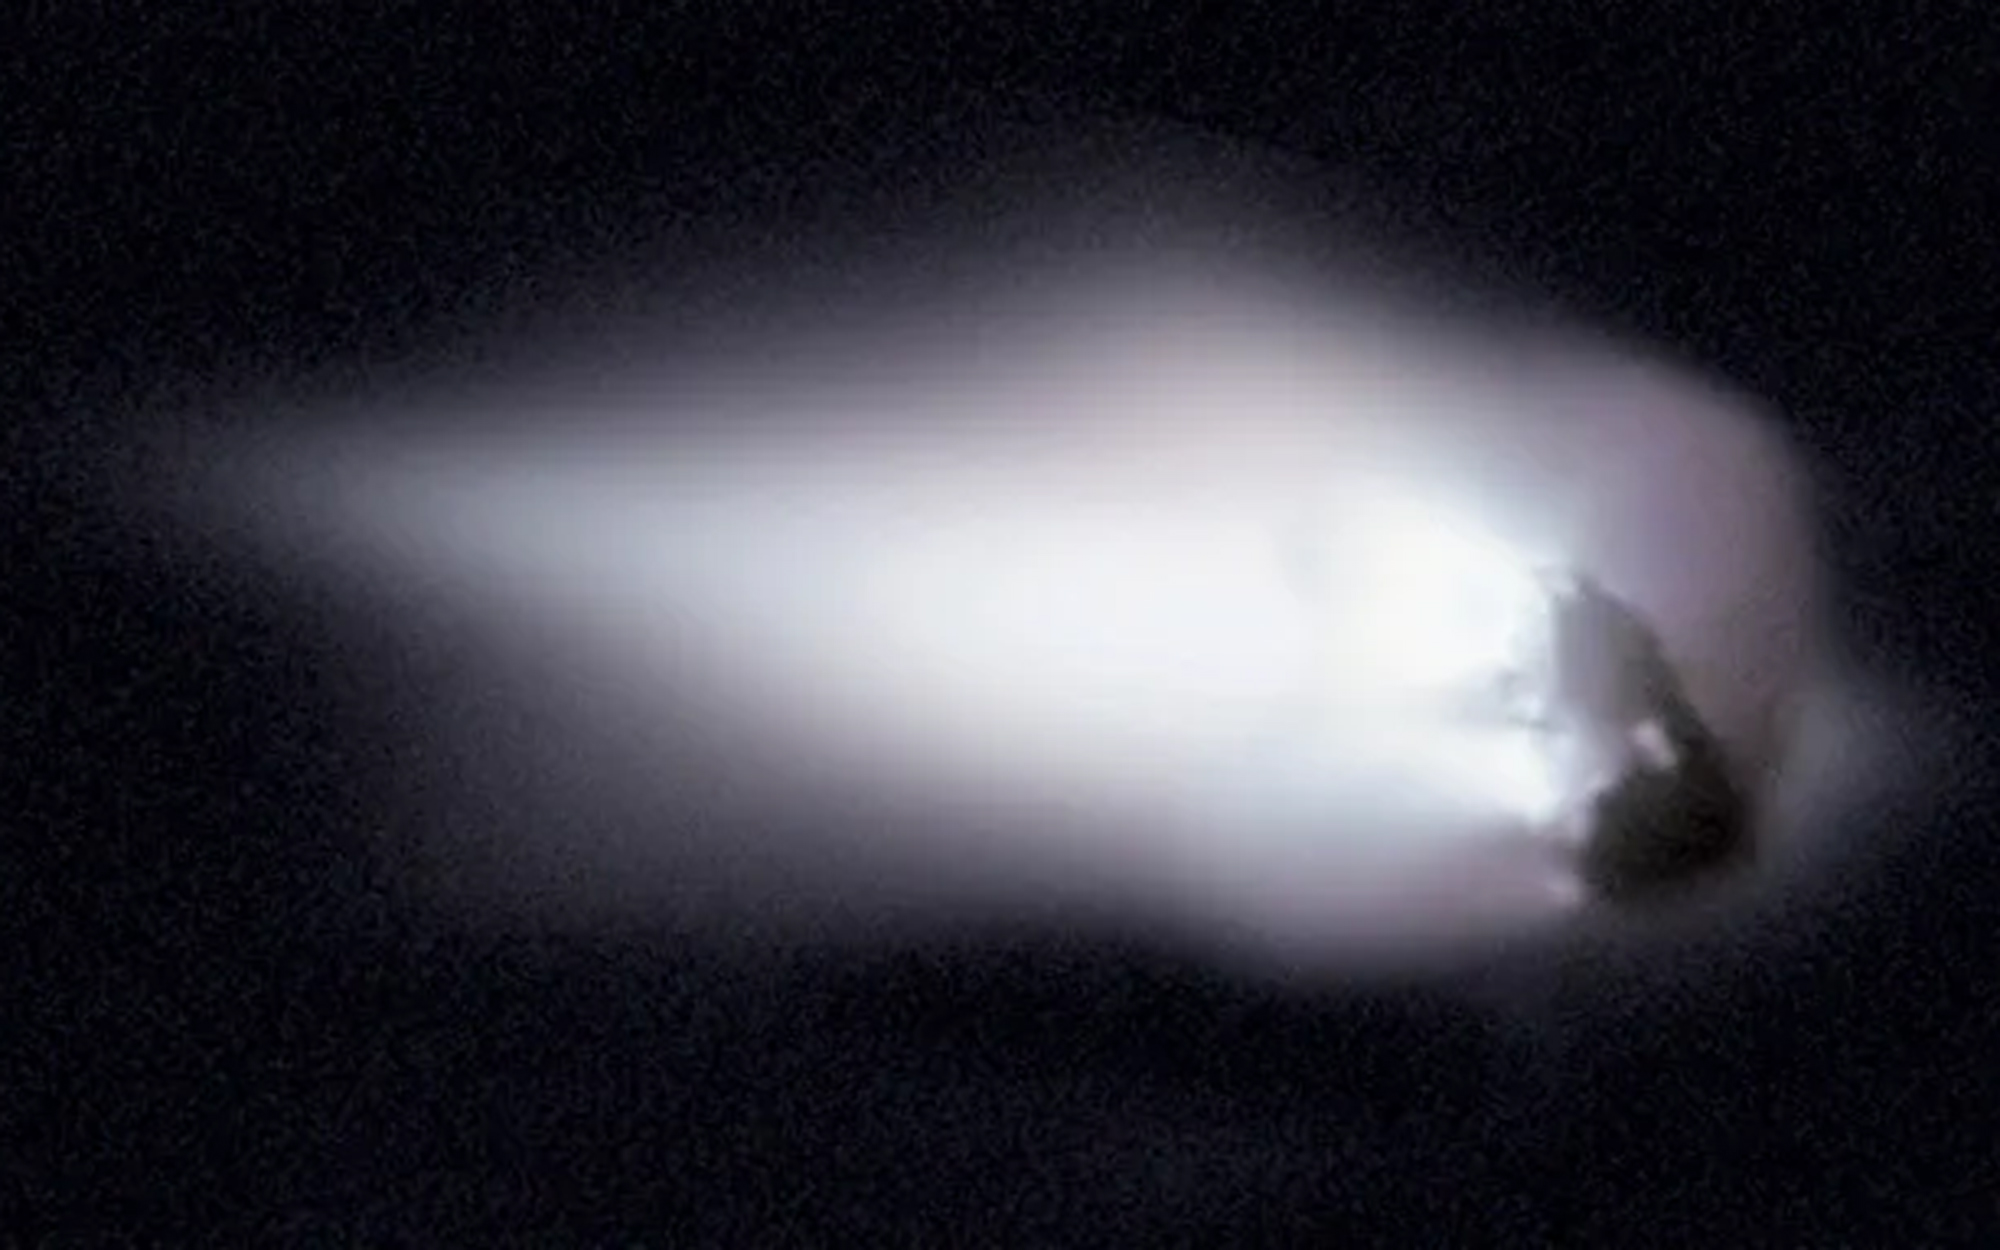 أصبحت المركبة الفضائية الأوروبية جيوتو واحدة من أولى المركبات الفضائية التي رصدت نواة مذنب وصورتها في عام 1986؛ إذا إنها صوّرت نواة مذنب هالي في أثناء ابتعاده عن الشمس.